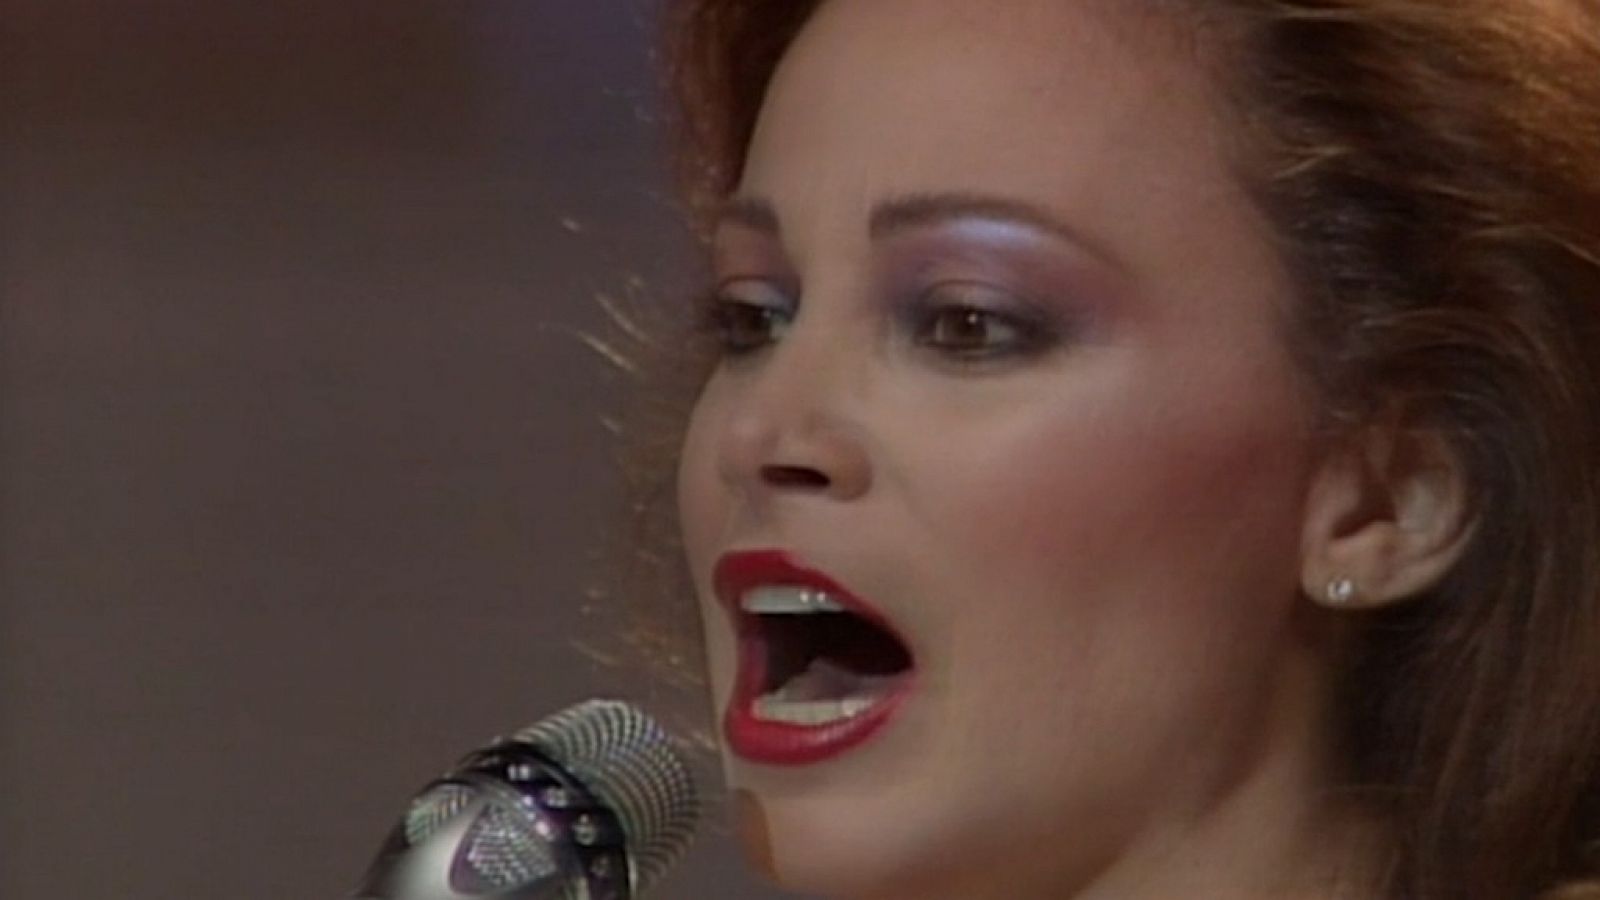 Festival de Eurovisión 1985 - Paloma San Basilio cantó "La fiesta terminó"